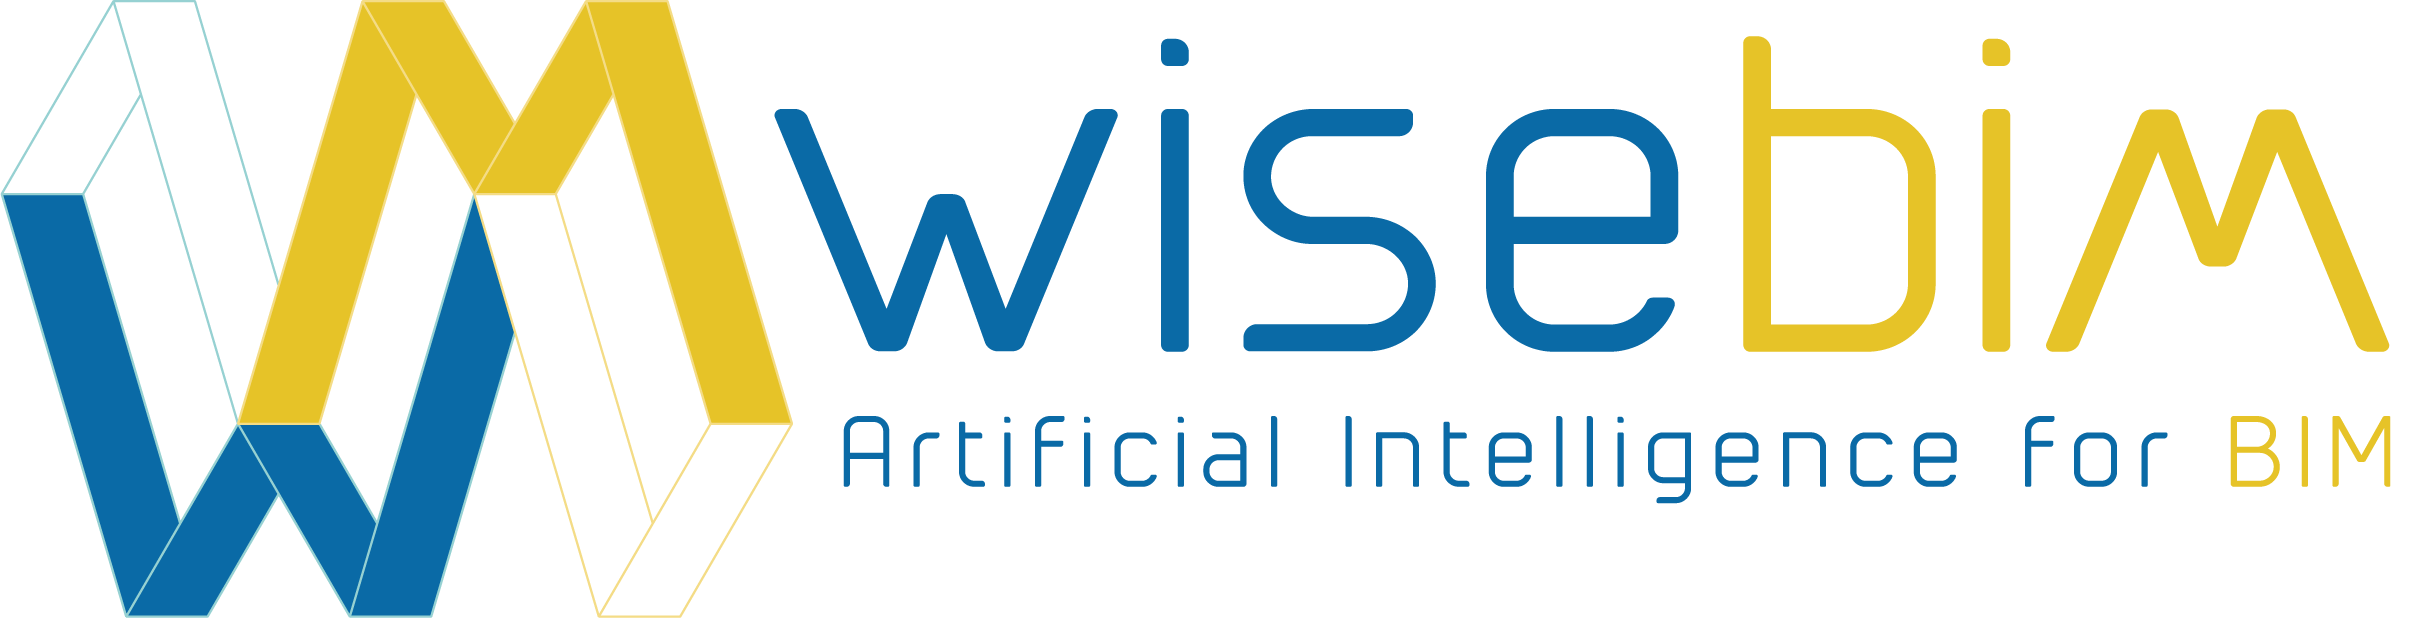 Wisebim logo